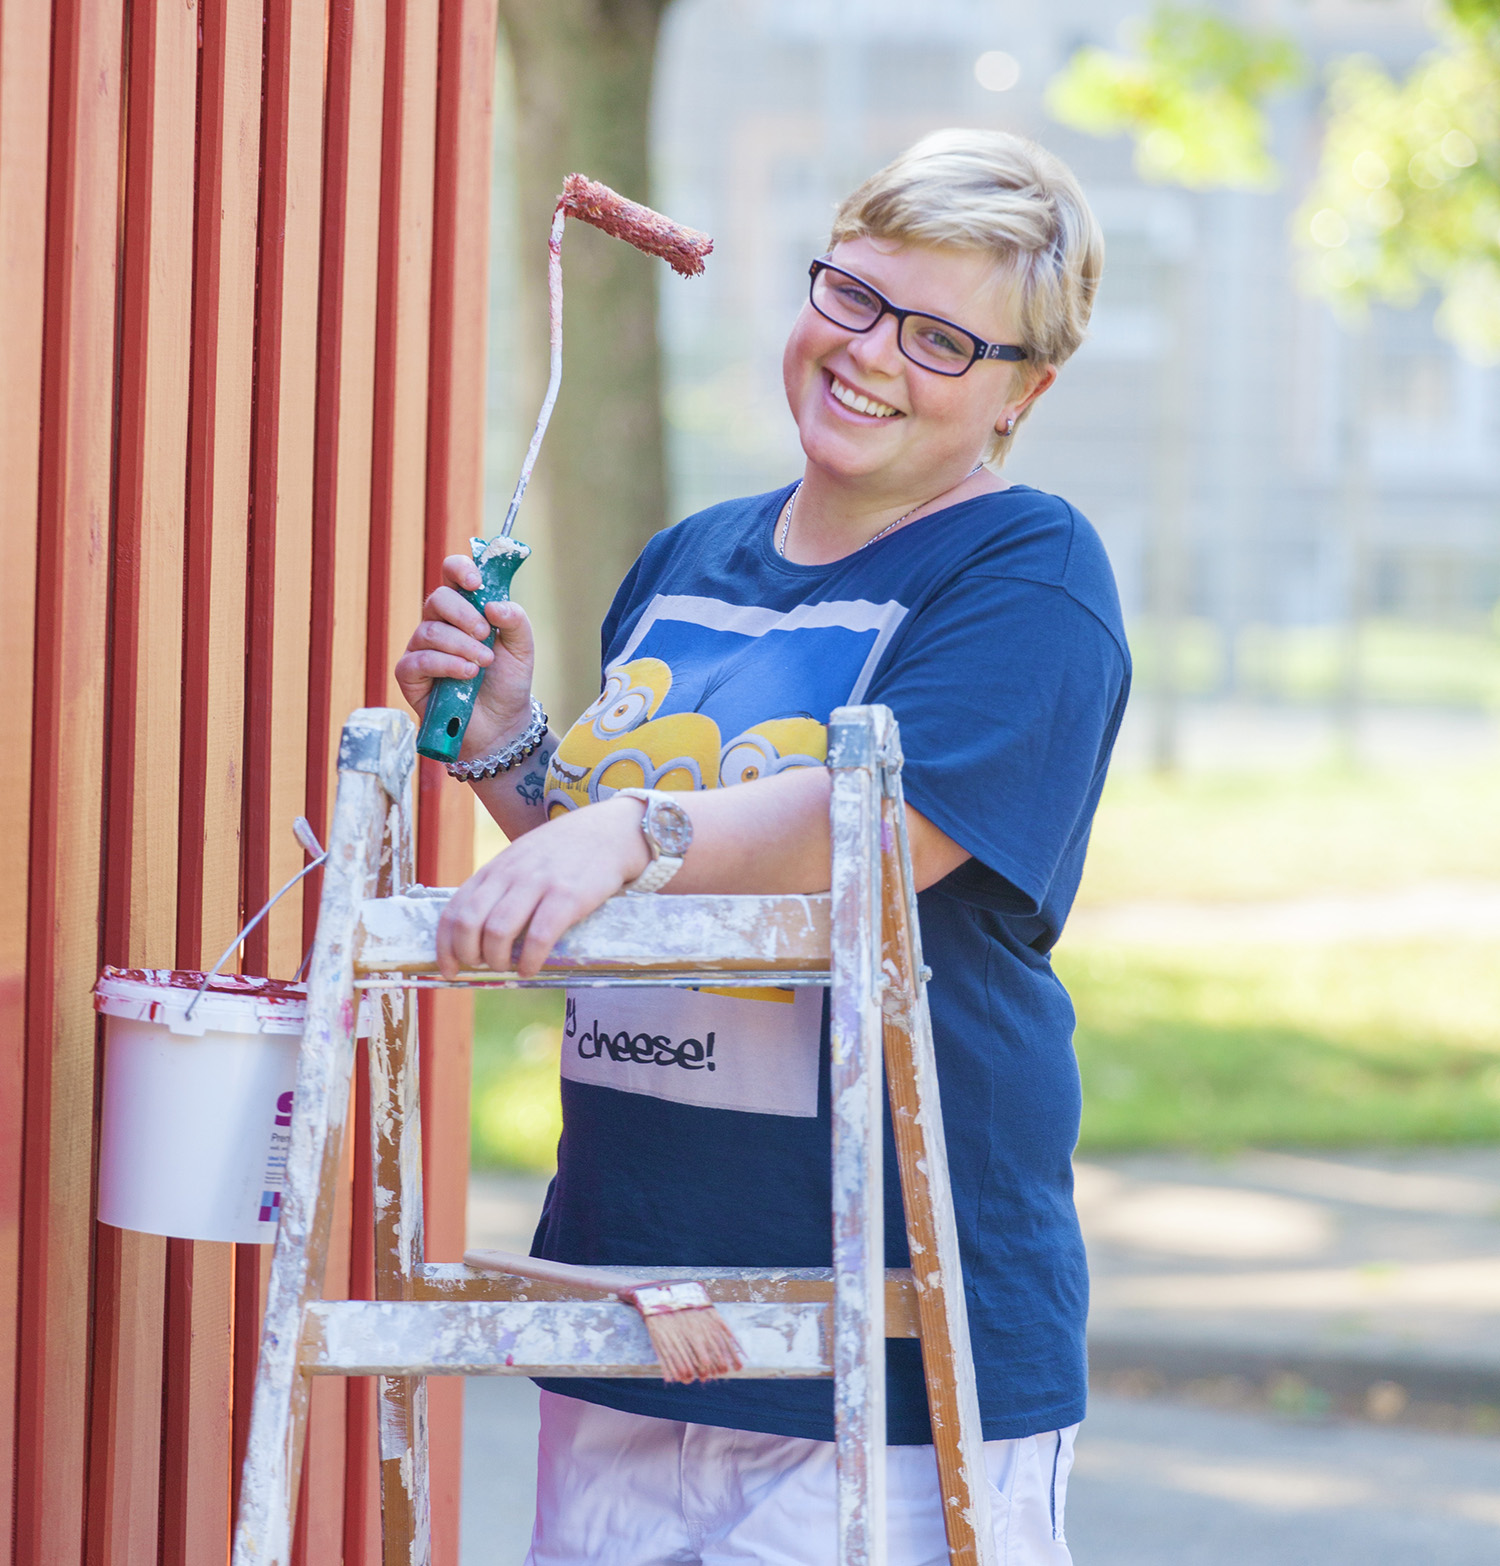 Eine Frau mit Behinderung streicht eine Wand.